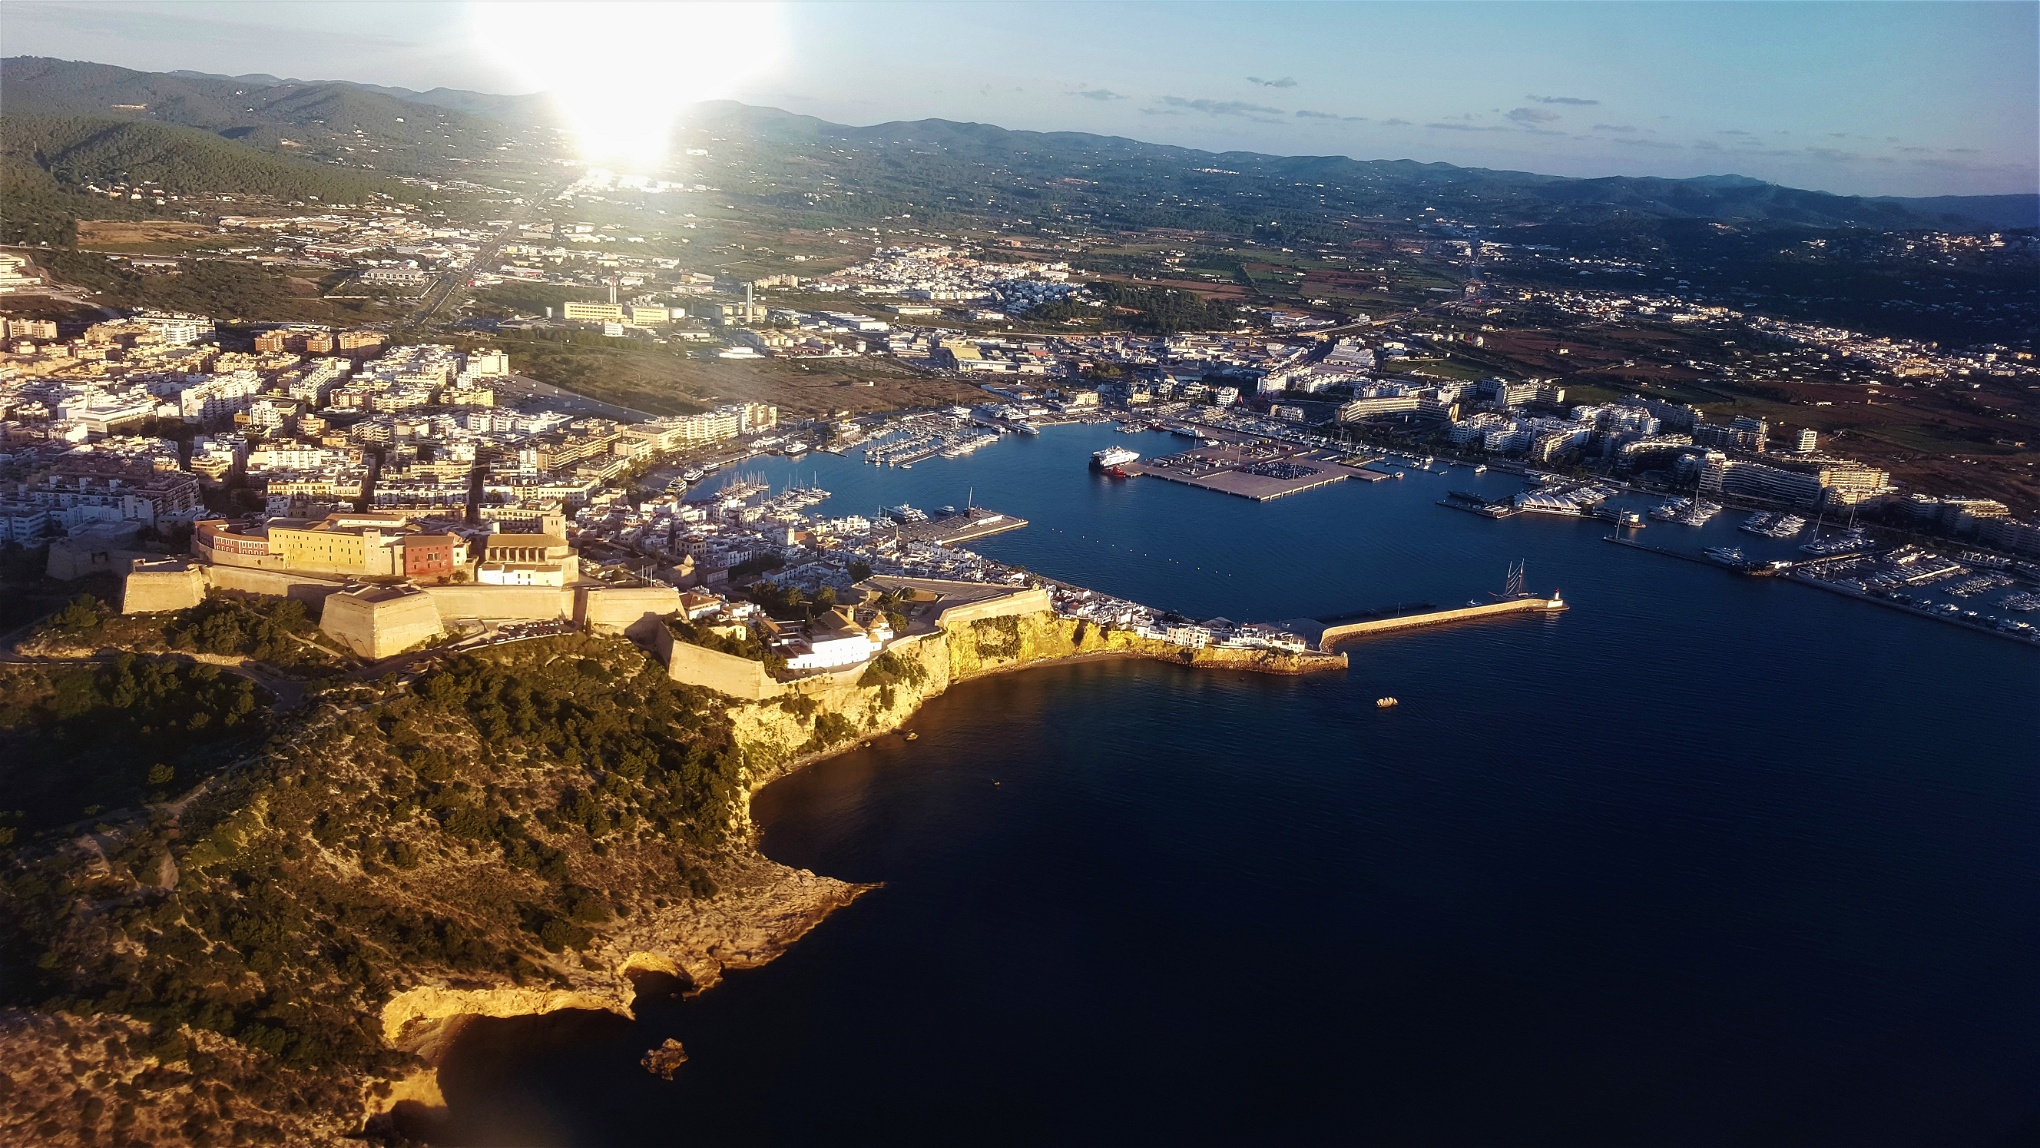 Ibiza består av öarna Ibiza och Formentera. På Ibiza finns ingen begränsning för hur mycket som kan byggas, så i stort sett hela ön är bebyggd, vilket ger en popcorn-effekt.